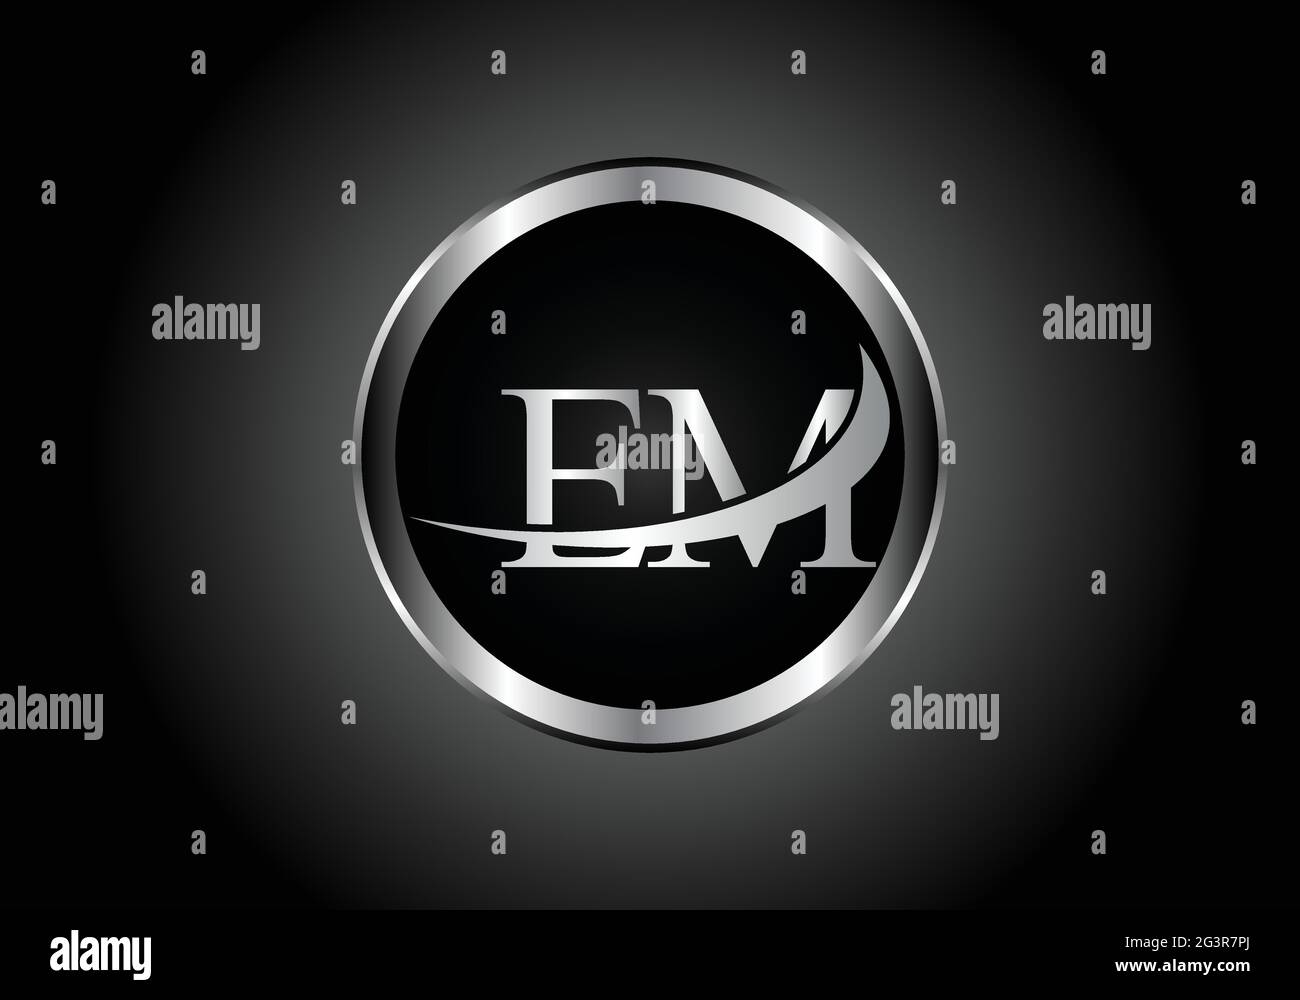 Lettre argent E M métal combinaison logo alphabet conception d'icône avec la couleur grise sur le noir et blanc dégradé design pour une entreprise ou une entreprise Illustration de Vecteur